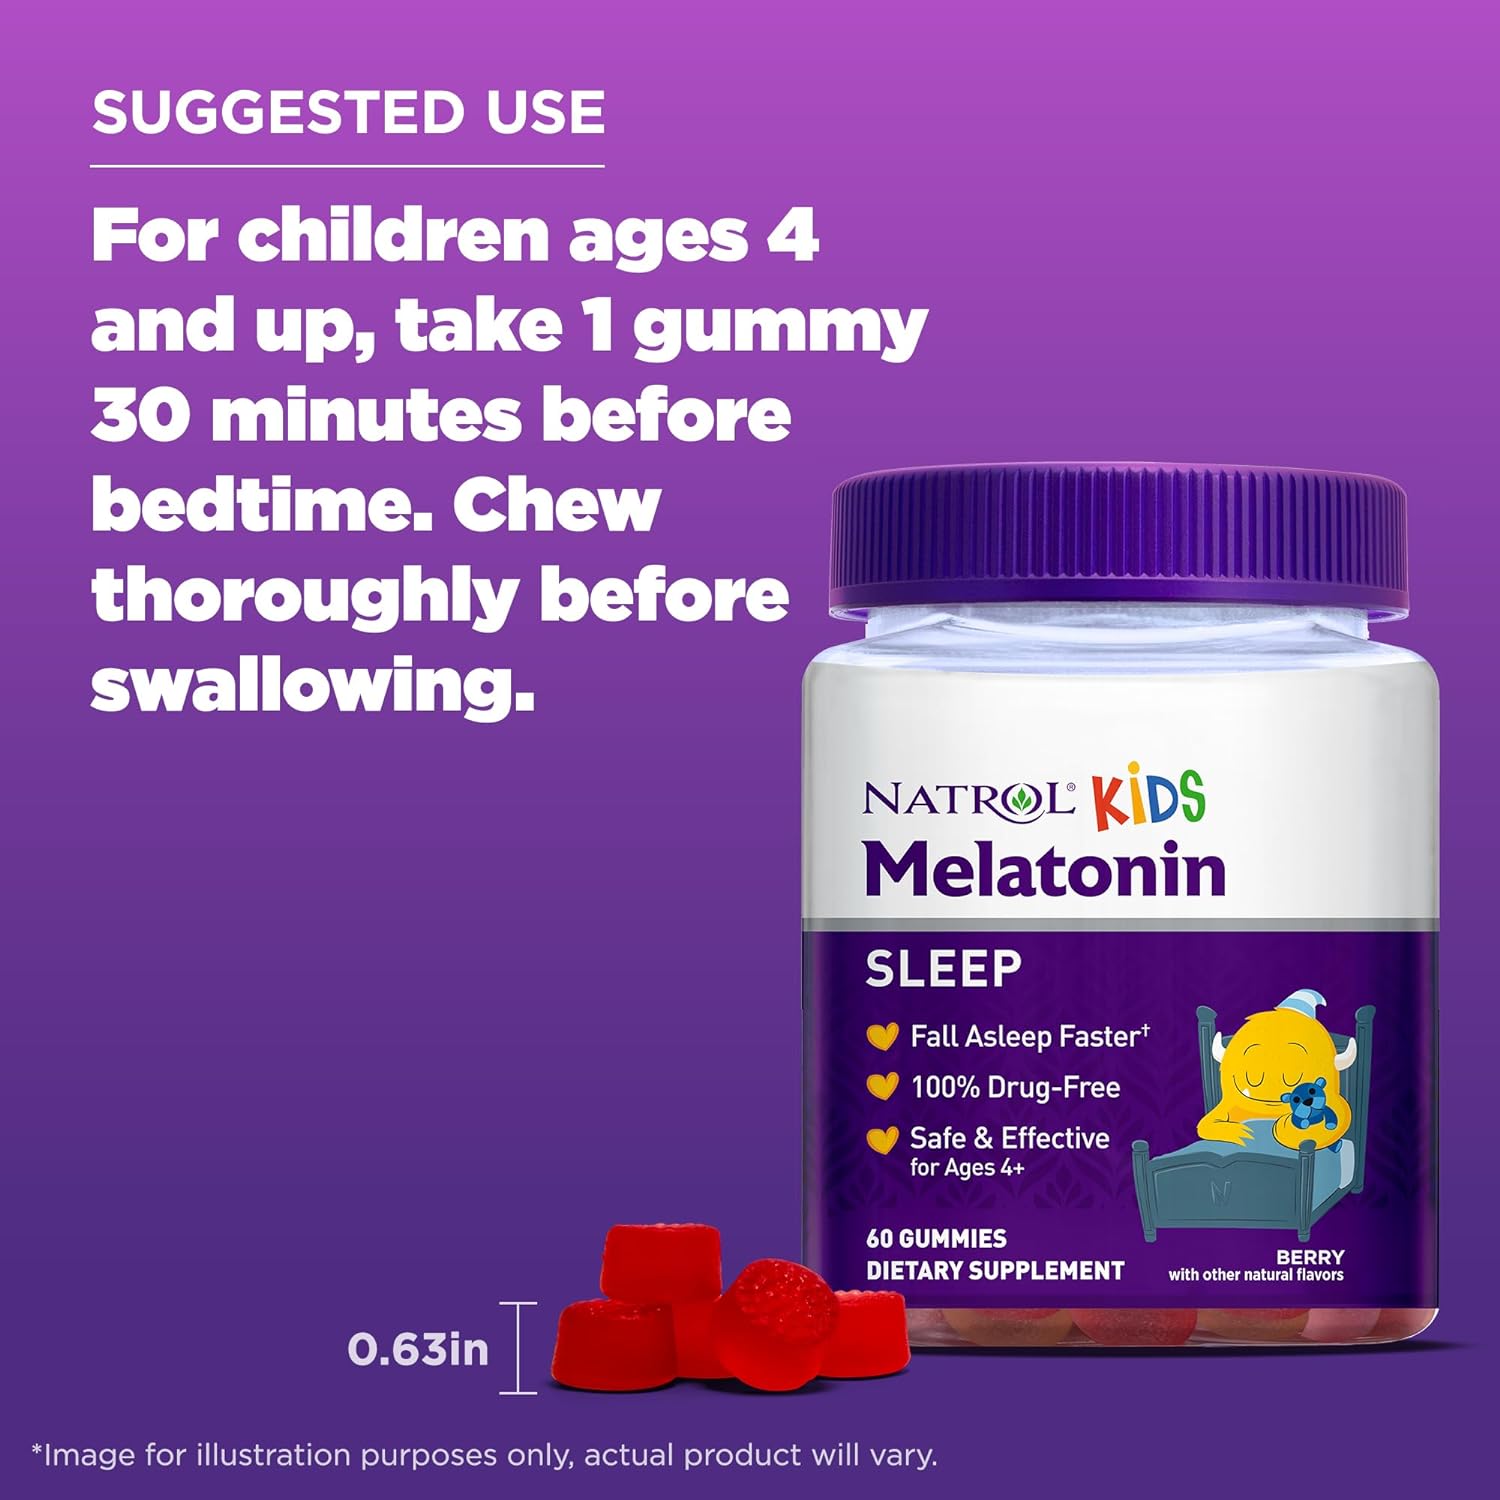 Natrol kids melatonin review